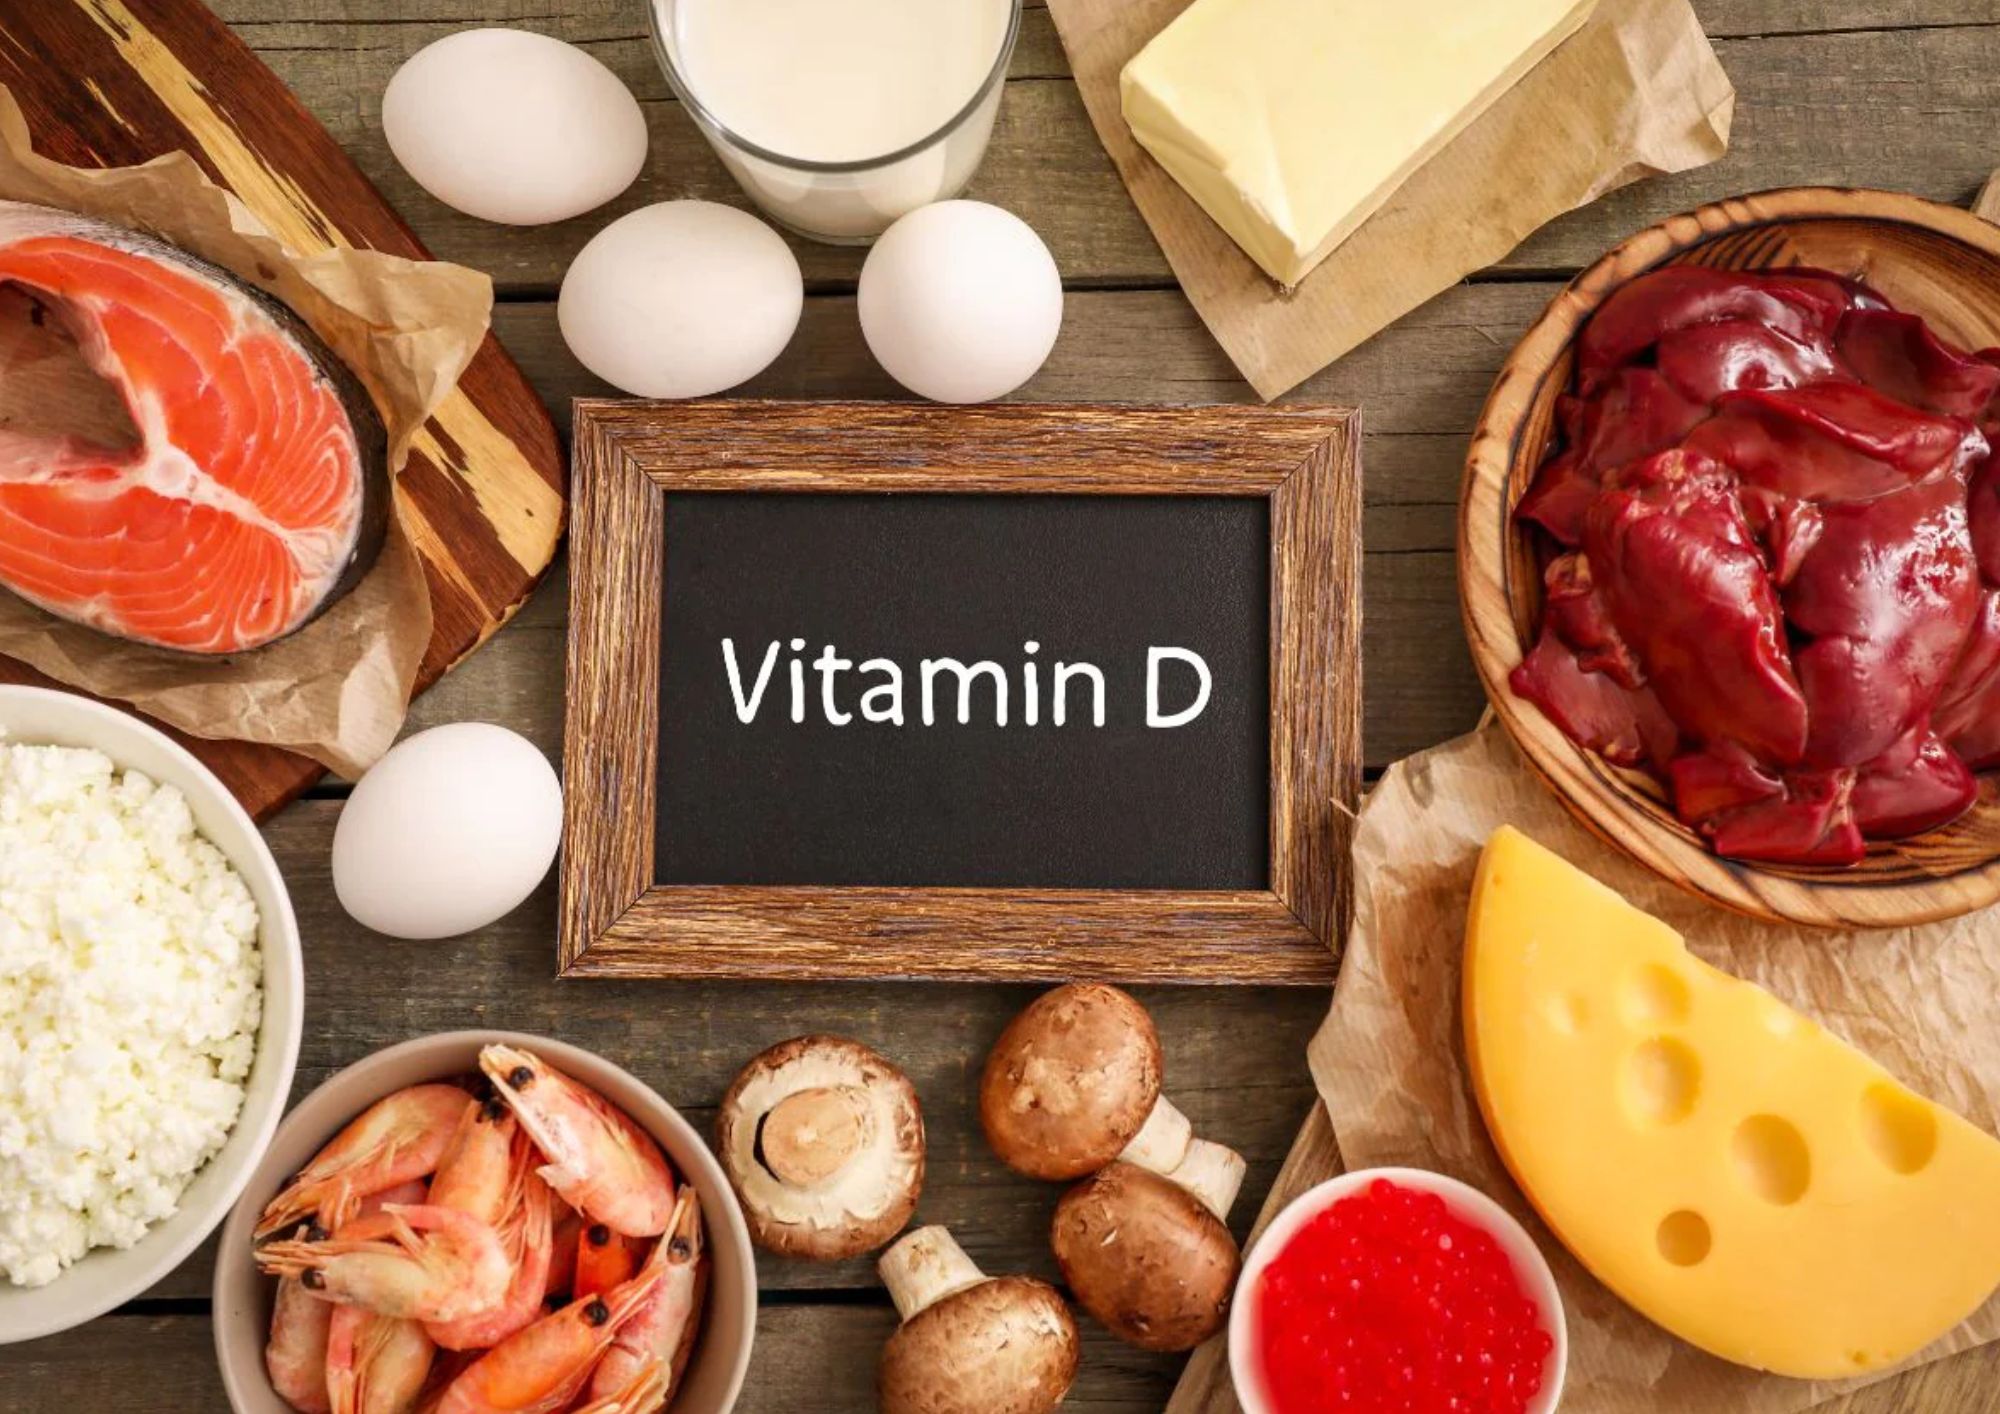 सबसे ज्यादा विटामिन डी किसमें पाया जाता है, विटामिन डी किससे प्राप्त होता है? - Sabse Jyada Vitamin D Kisme Paya Jata Hai